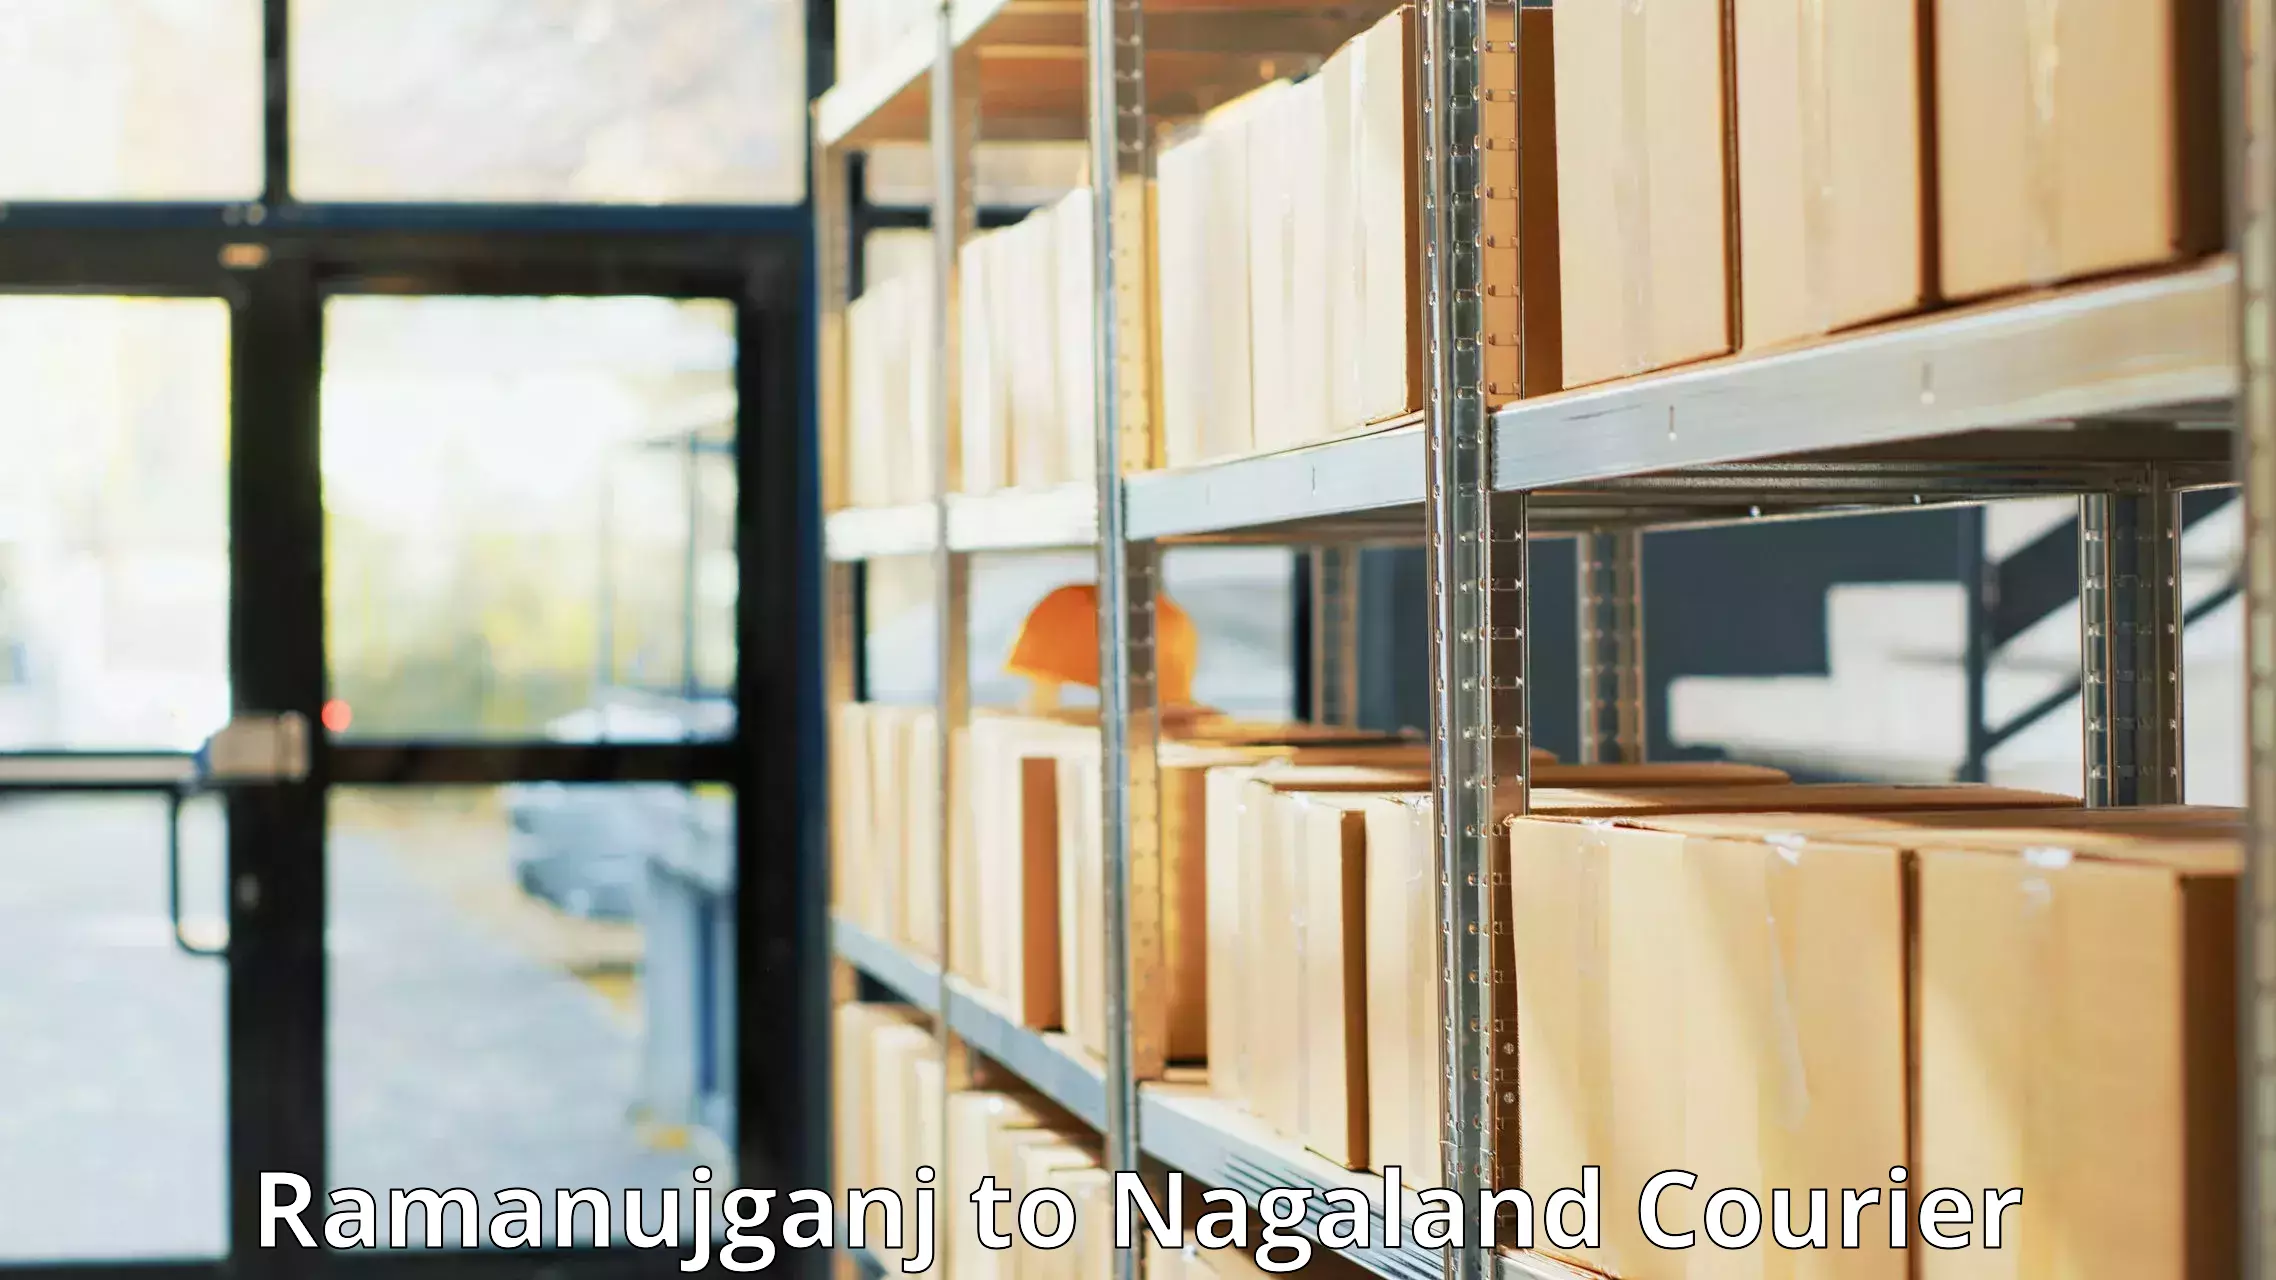 Global freight services Ramanujganj to NIT Nagaland